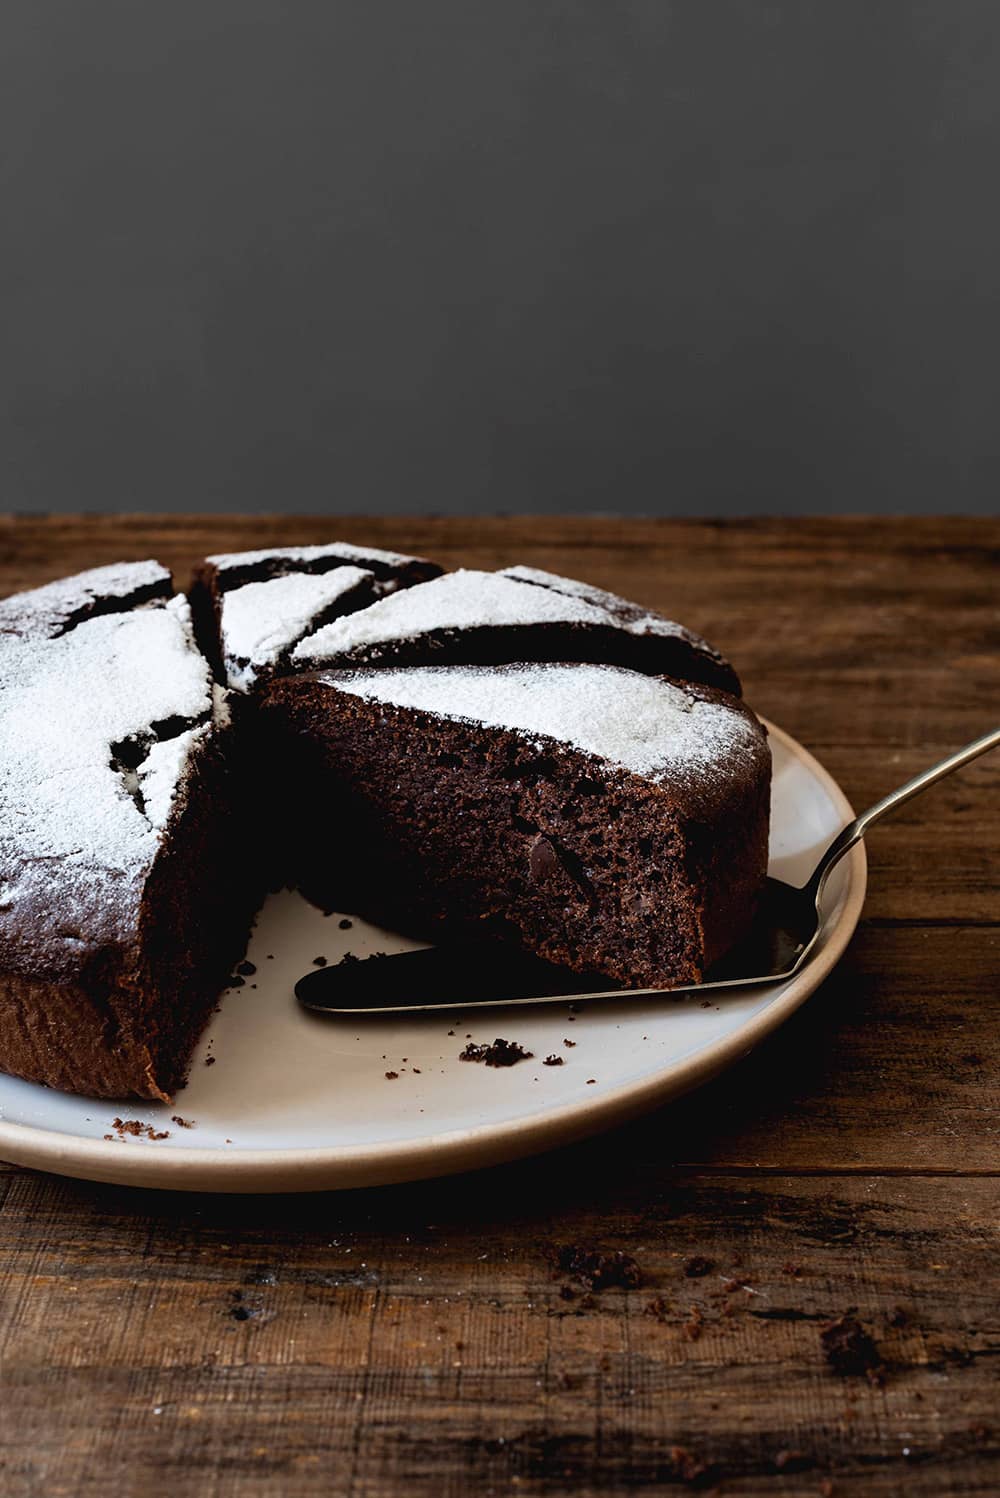 En una mesa de madera está el bizcocho de chocolate con aceite de oliva cortado y espolvoreado con azúcar glas. También se ve una pala para tartas.